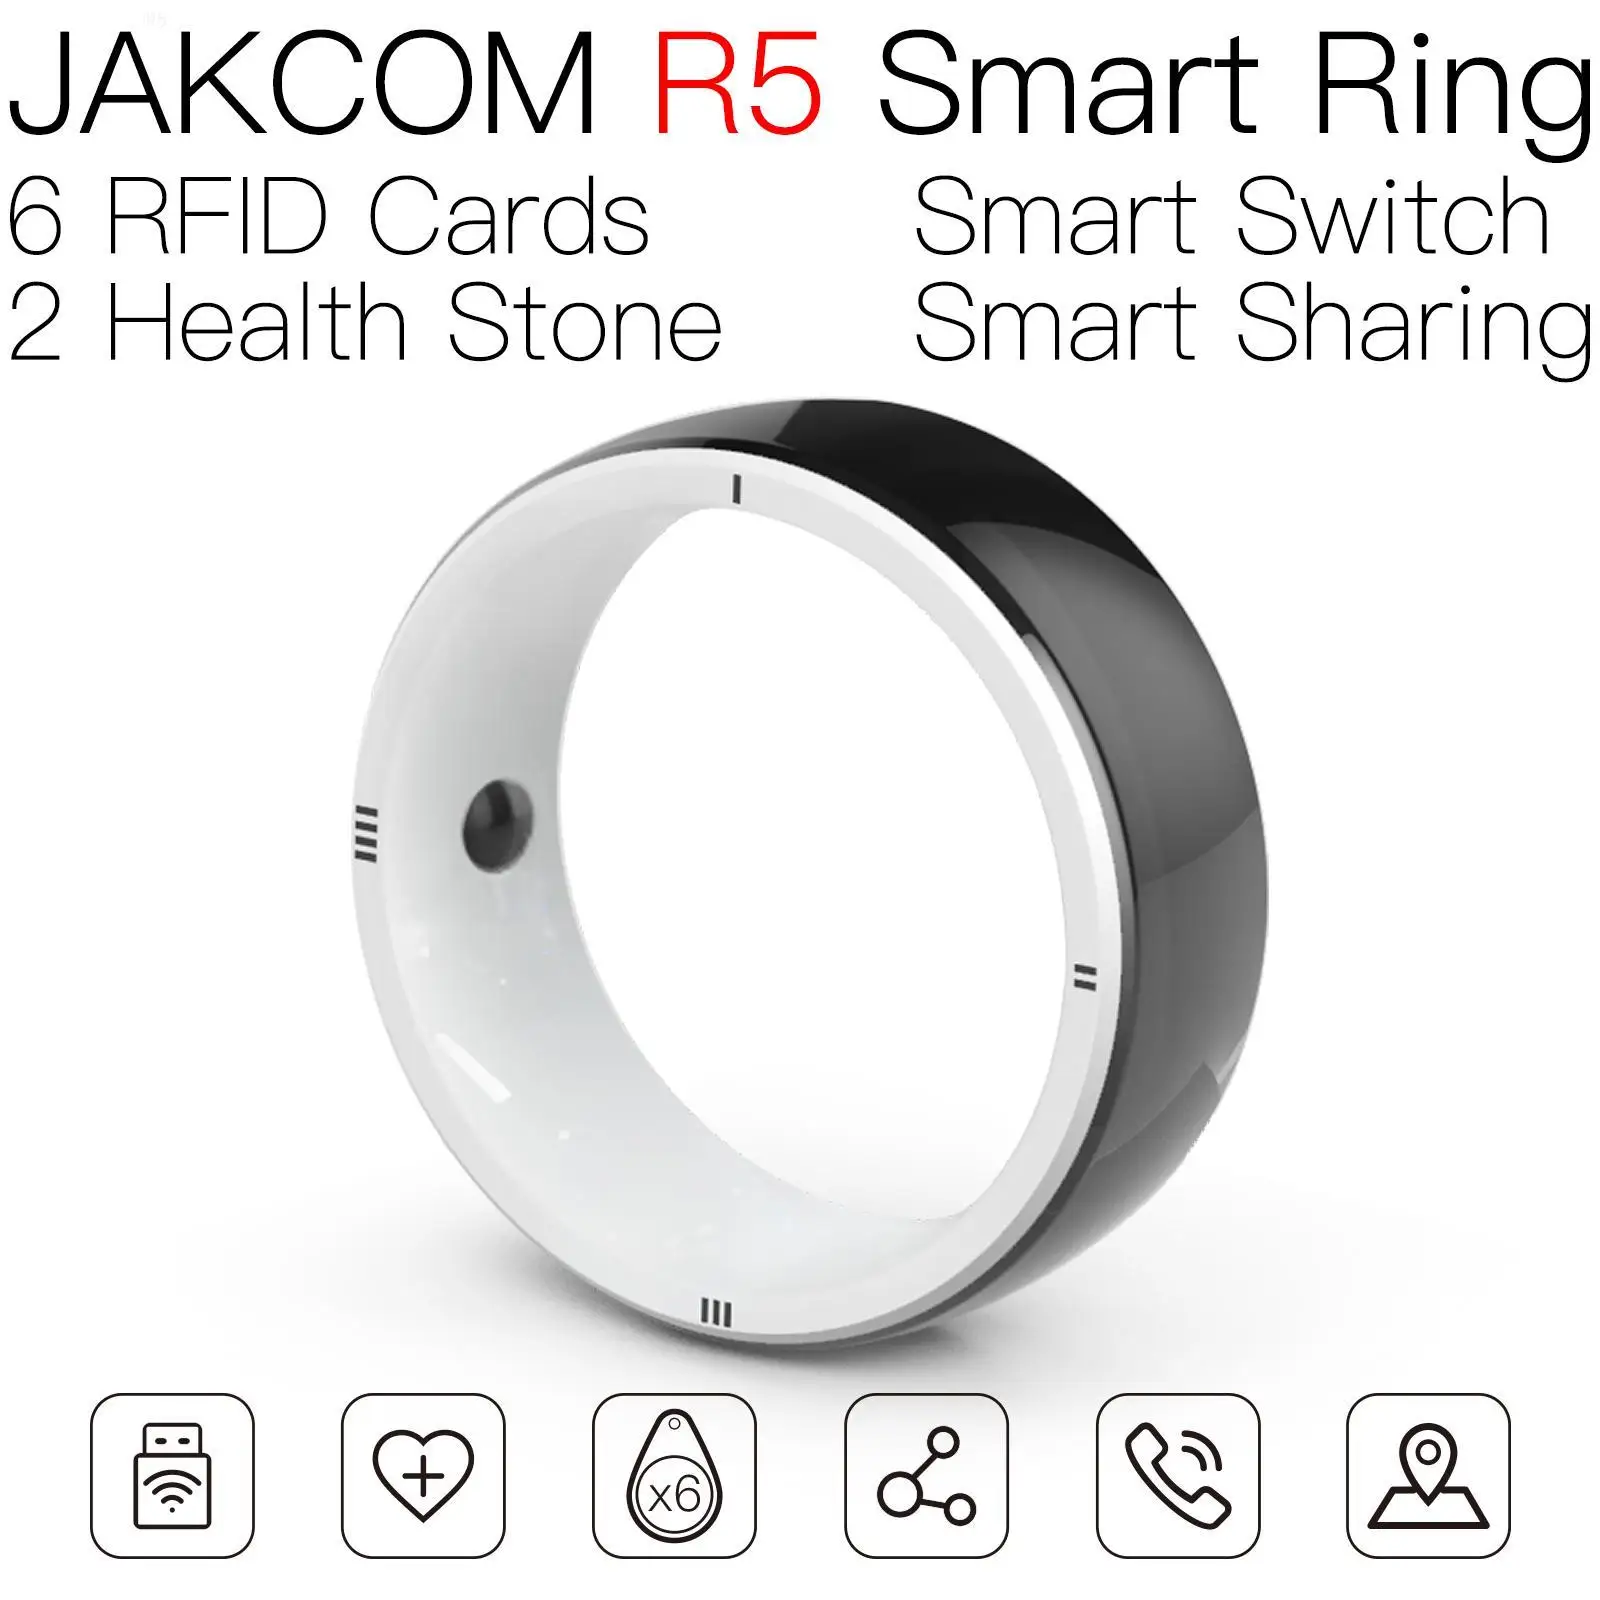 

Умное кольцо JAKCOM R5, красивое, чем браслет 5, моя светодиодная бирка для часов hueur hbo max 4, Официальный магазин цветов